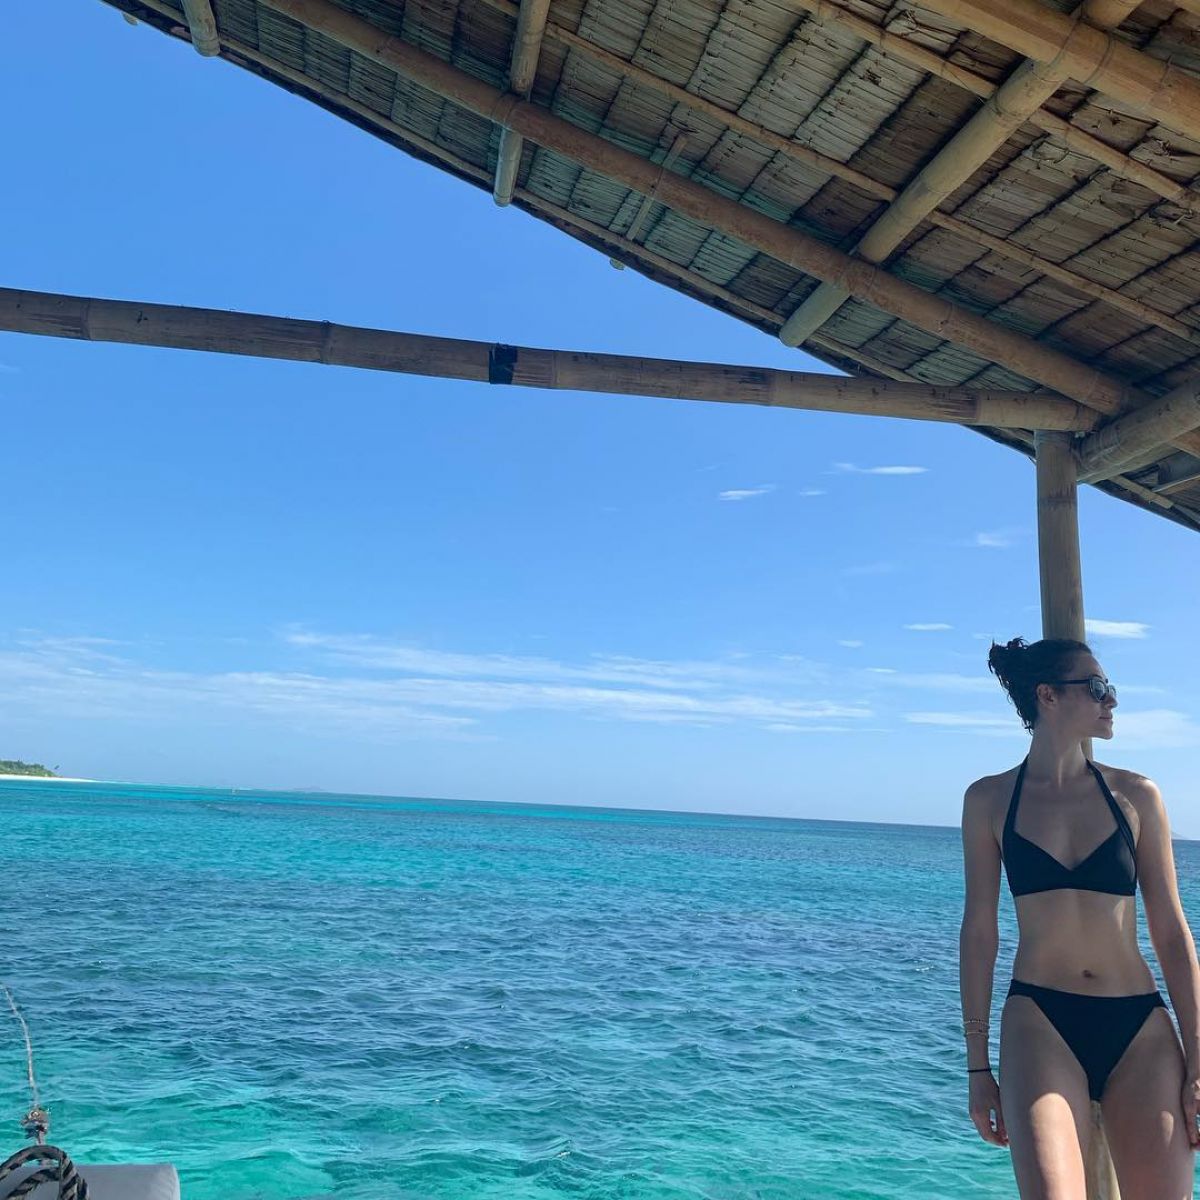 EMMY ROSSUM in Bikini - Instagram Pictures 12/31/2018.